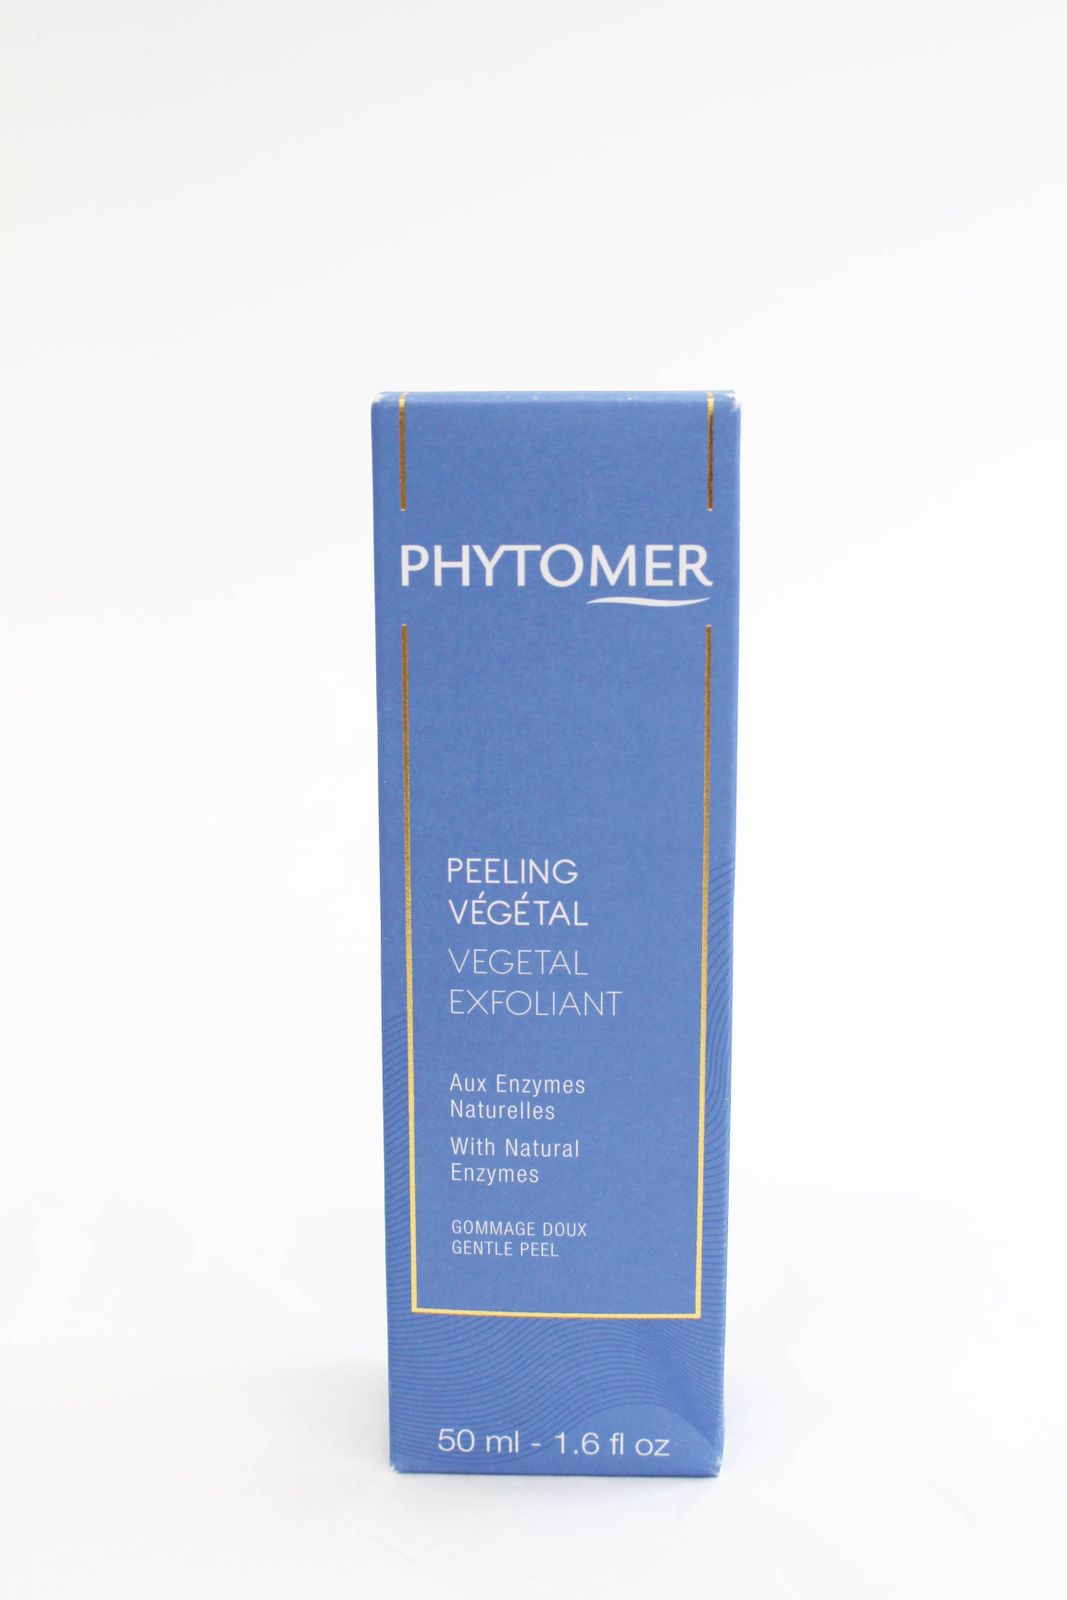 PHYTOMER フィトメール フェイスピーリング 50ml パッケージダメージ R2306_129 - 基礎化粧品